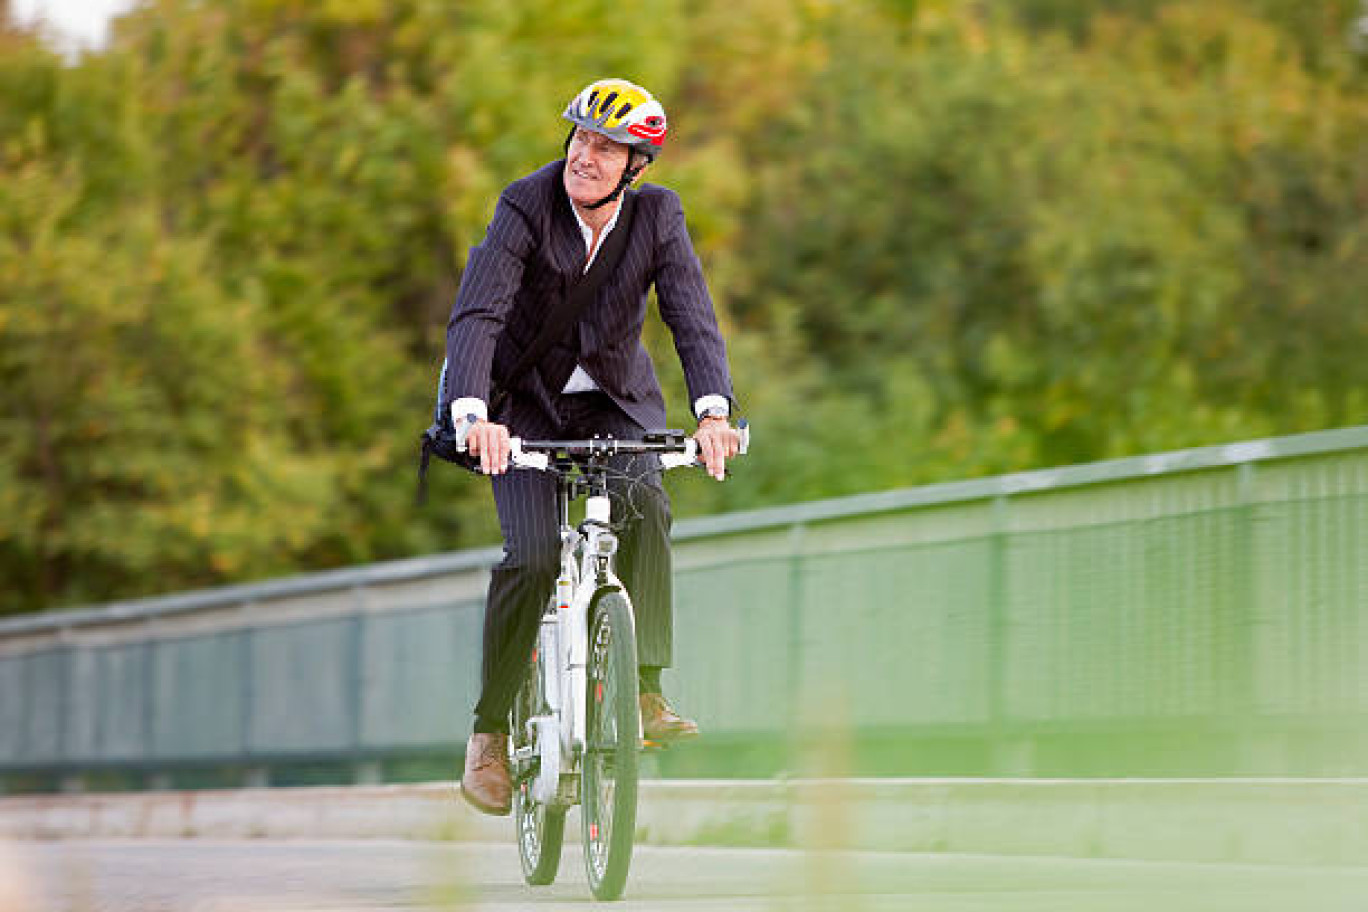 Se rendre au travail en vélo, alternative à la voiture. 